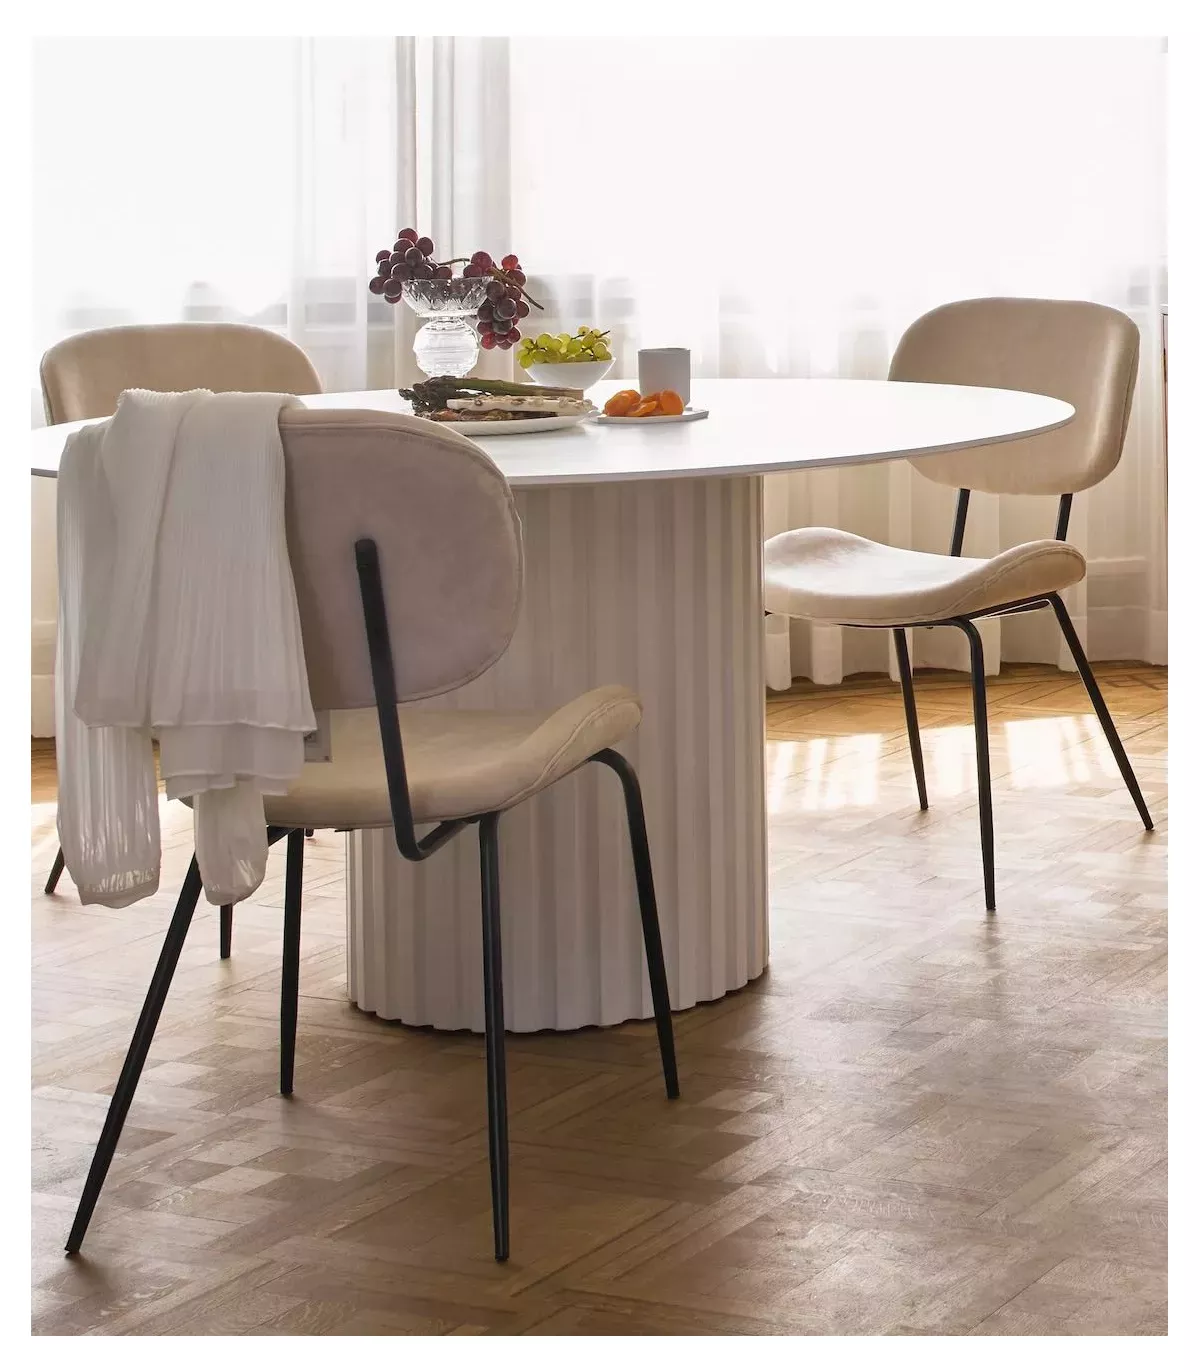 Mesa de comedor redonda, color blanco